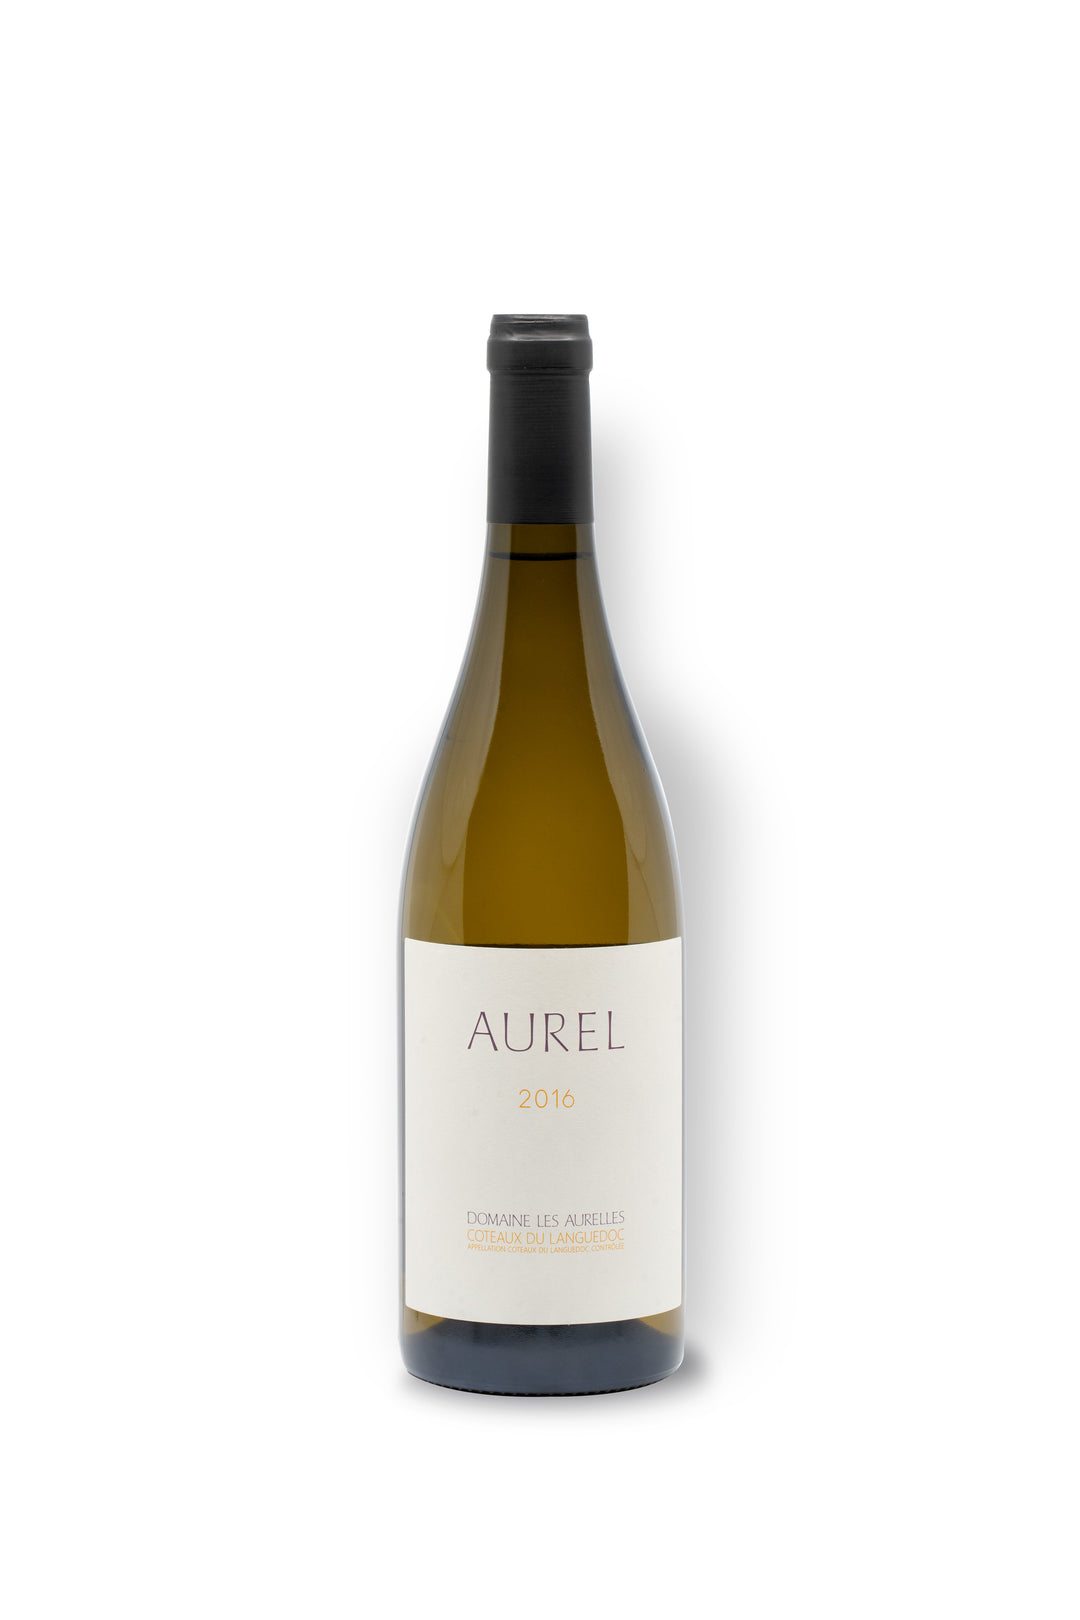 Domaine les Aurelles "Aurel" Blanc 2016